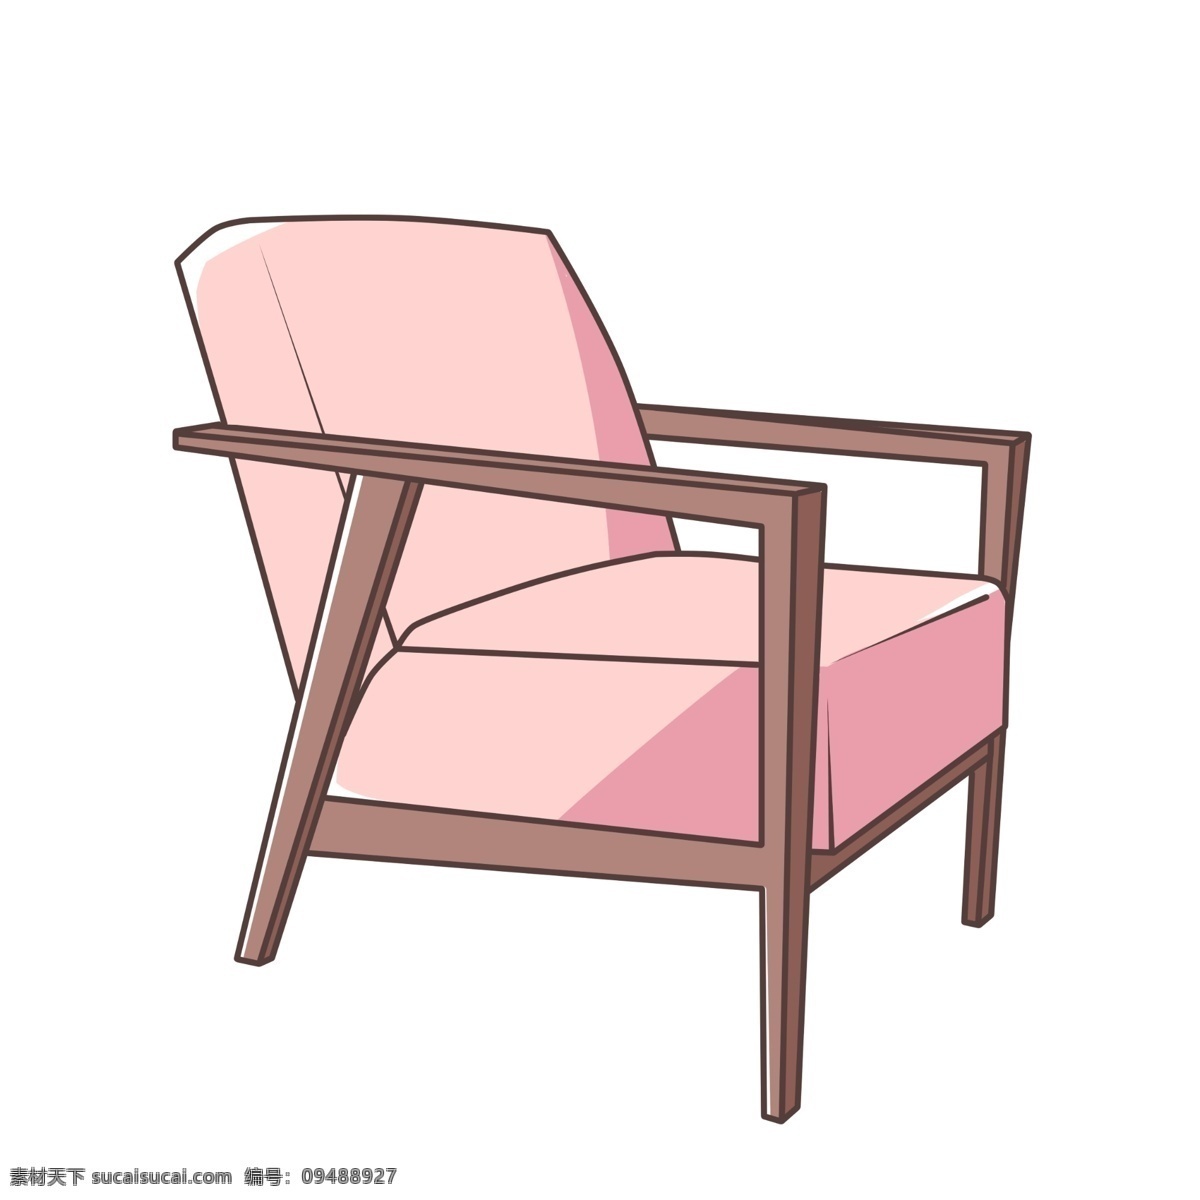 粉色 椅子 装饰 插画 粉色的椅子 木头椅子 漂亮的椅子 创意椅子 立体椅子 家具椅子 木质椅子